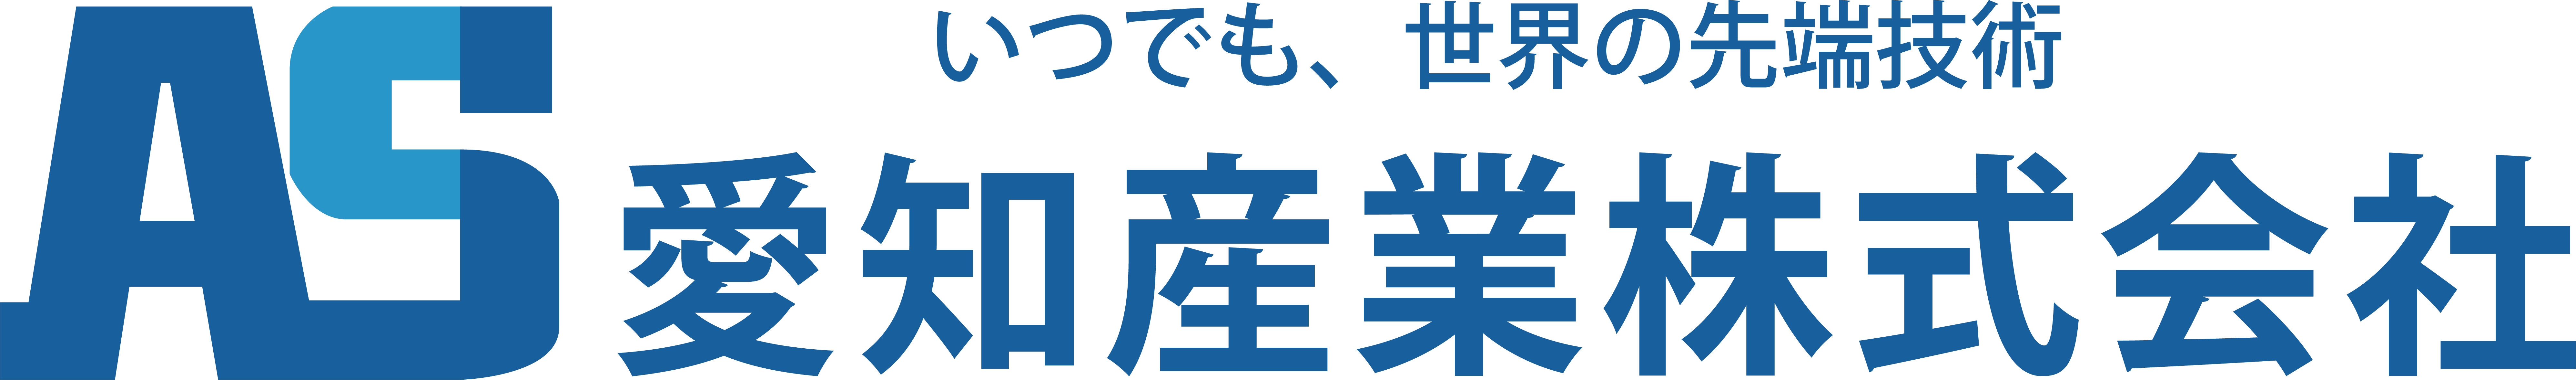 愛知産業_logo